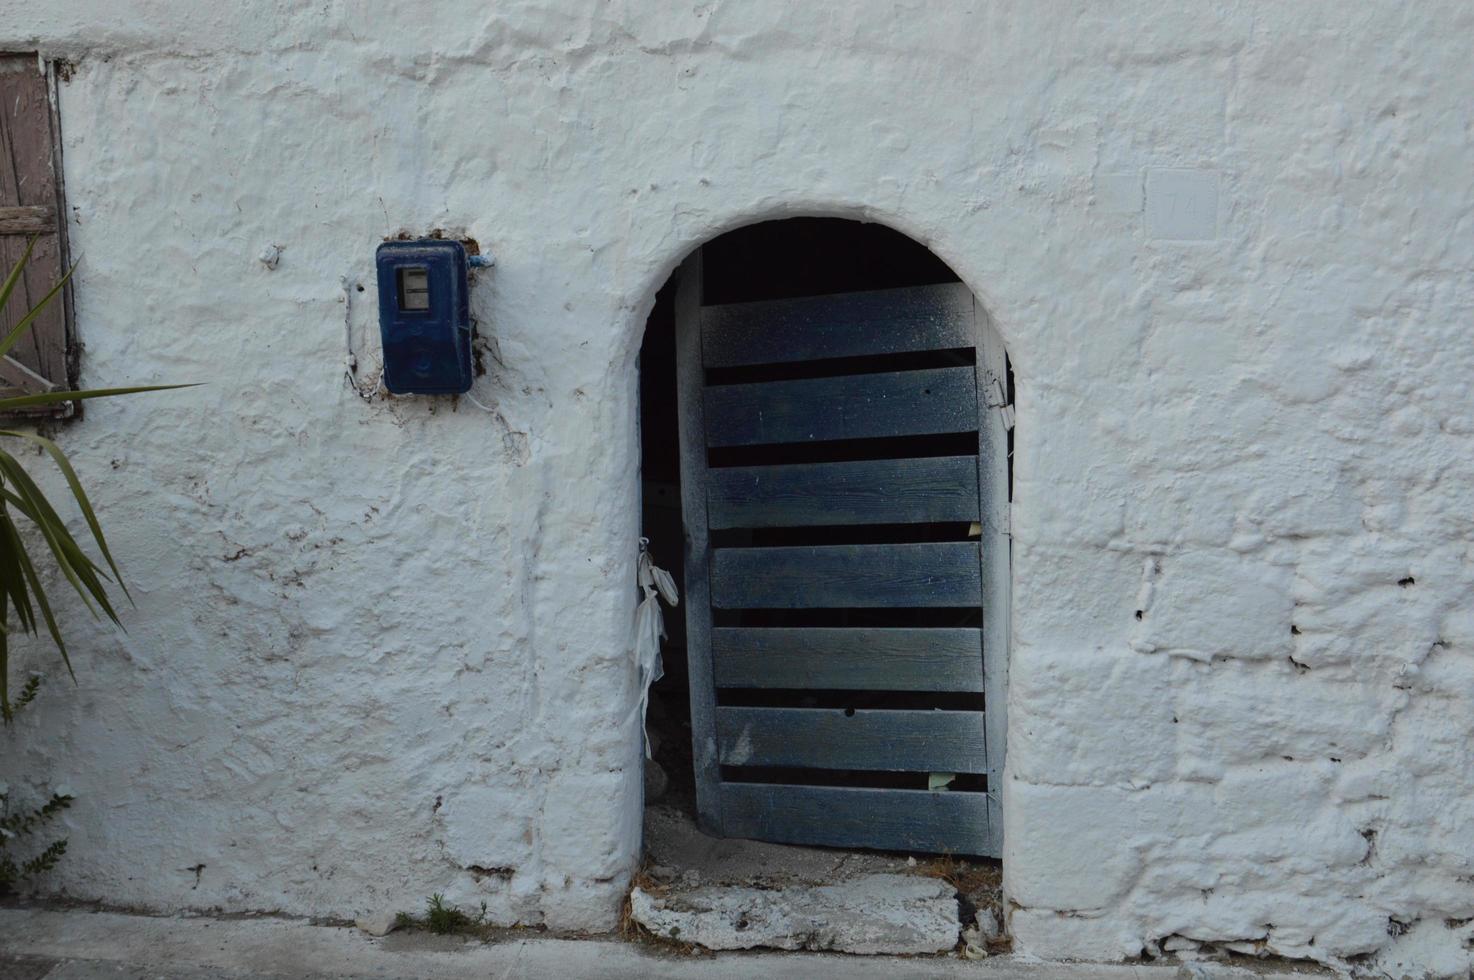 Arquitectura tradicional de la aldea de Theologos en la isla de Rodas en Grecia foto